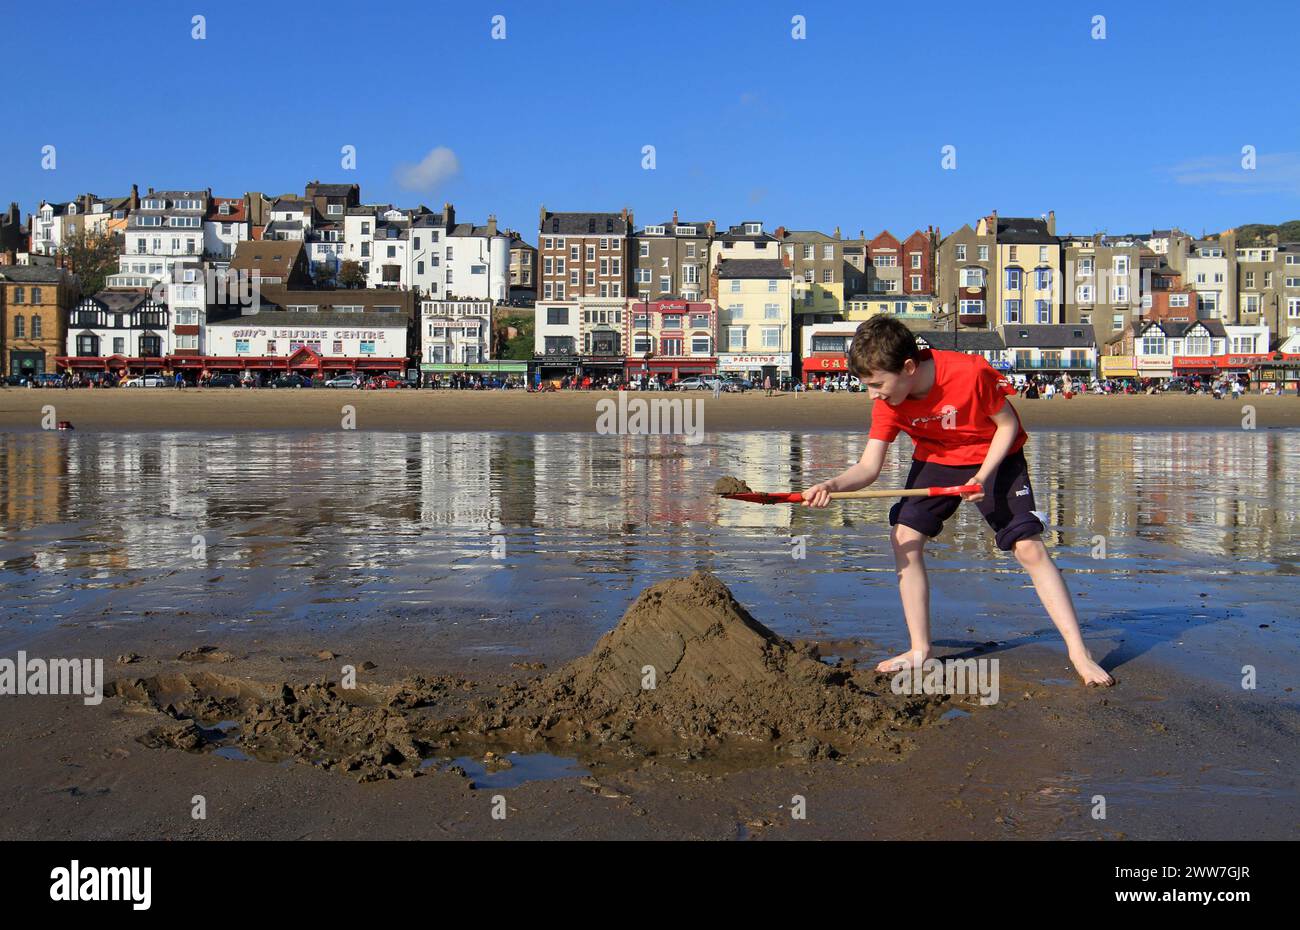 16/10/11. Umgeben von blauem Himmel, baut die zehnjährige Finley am Strand von Scarborough eine Zuflucht... alle Rechte vorbehalten. F Stopp P Stockfoto